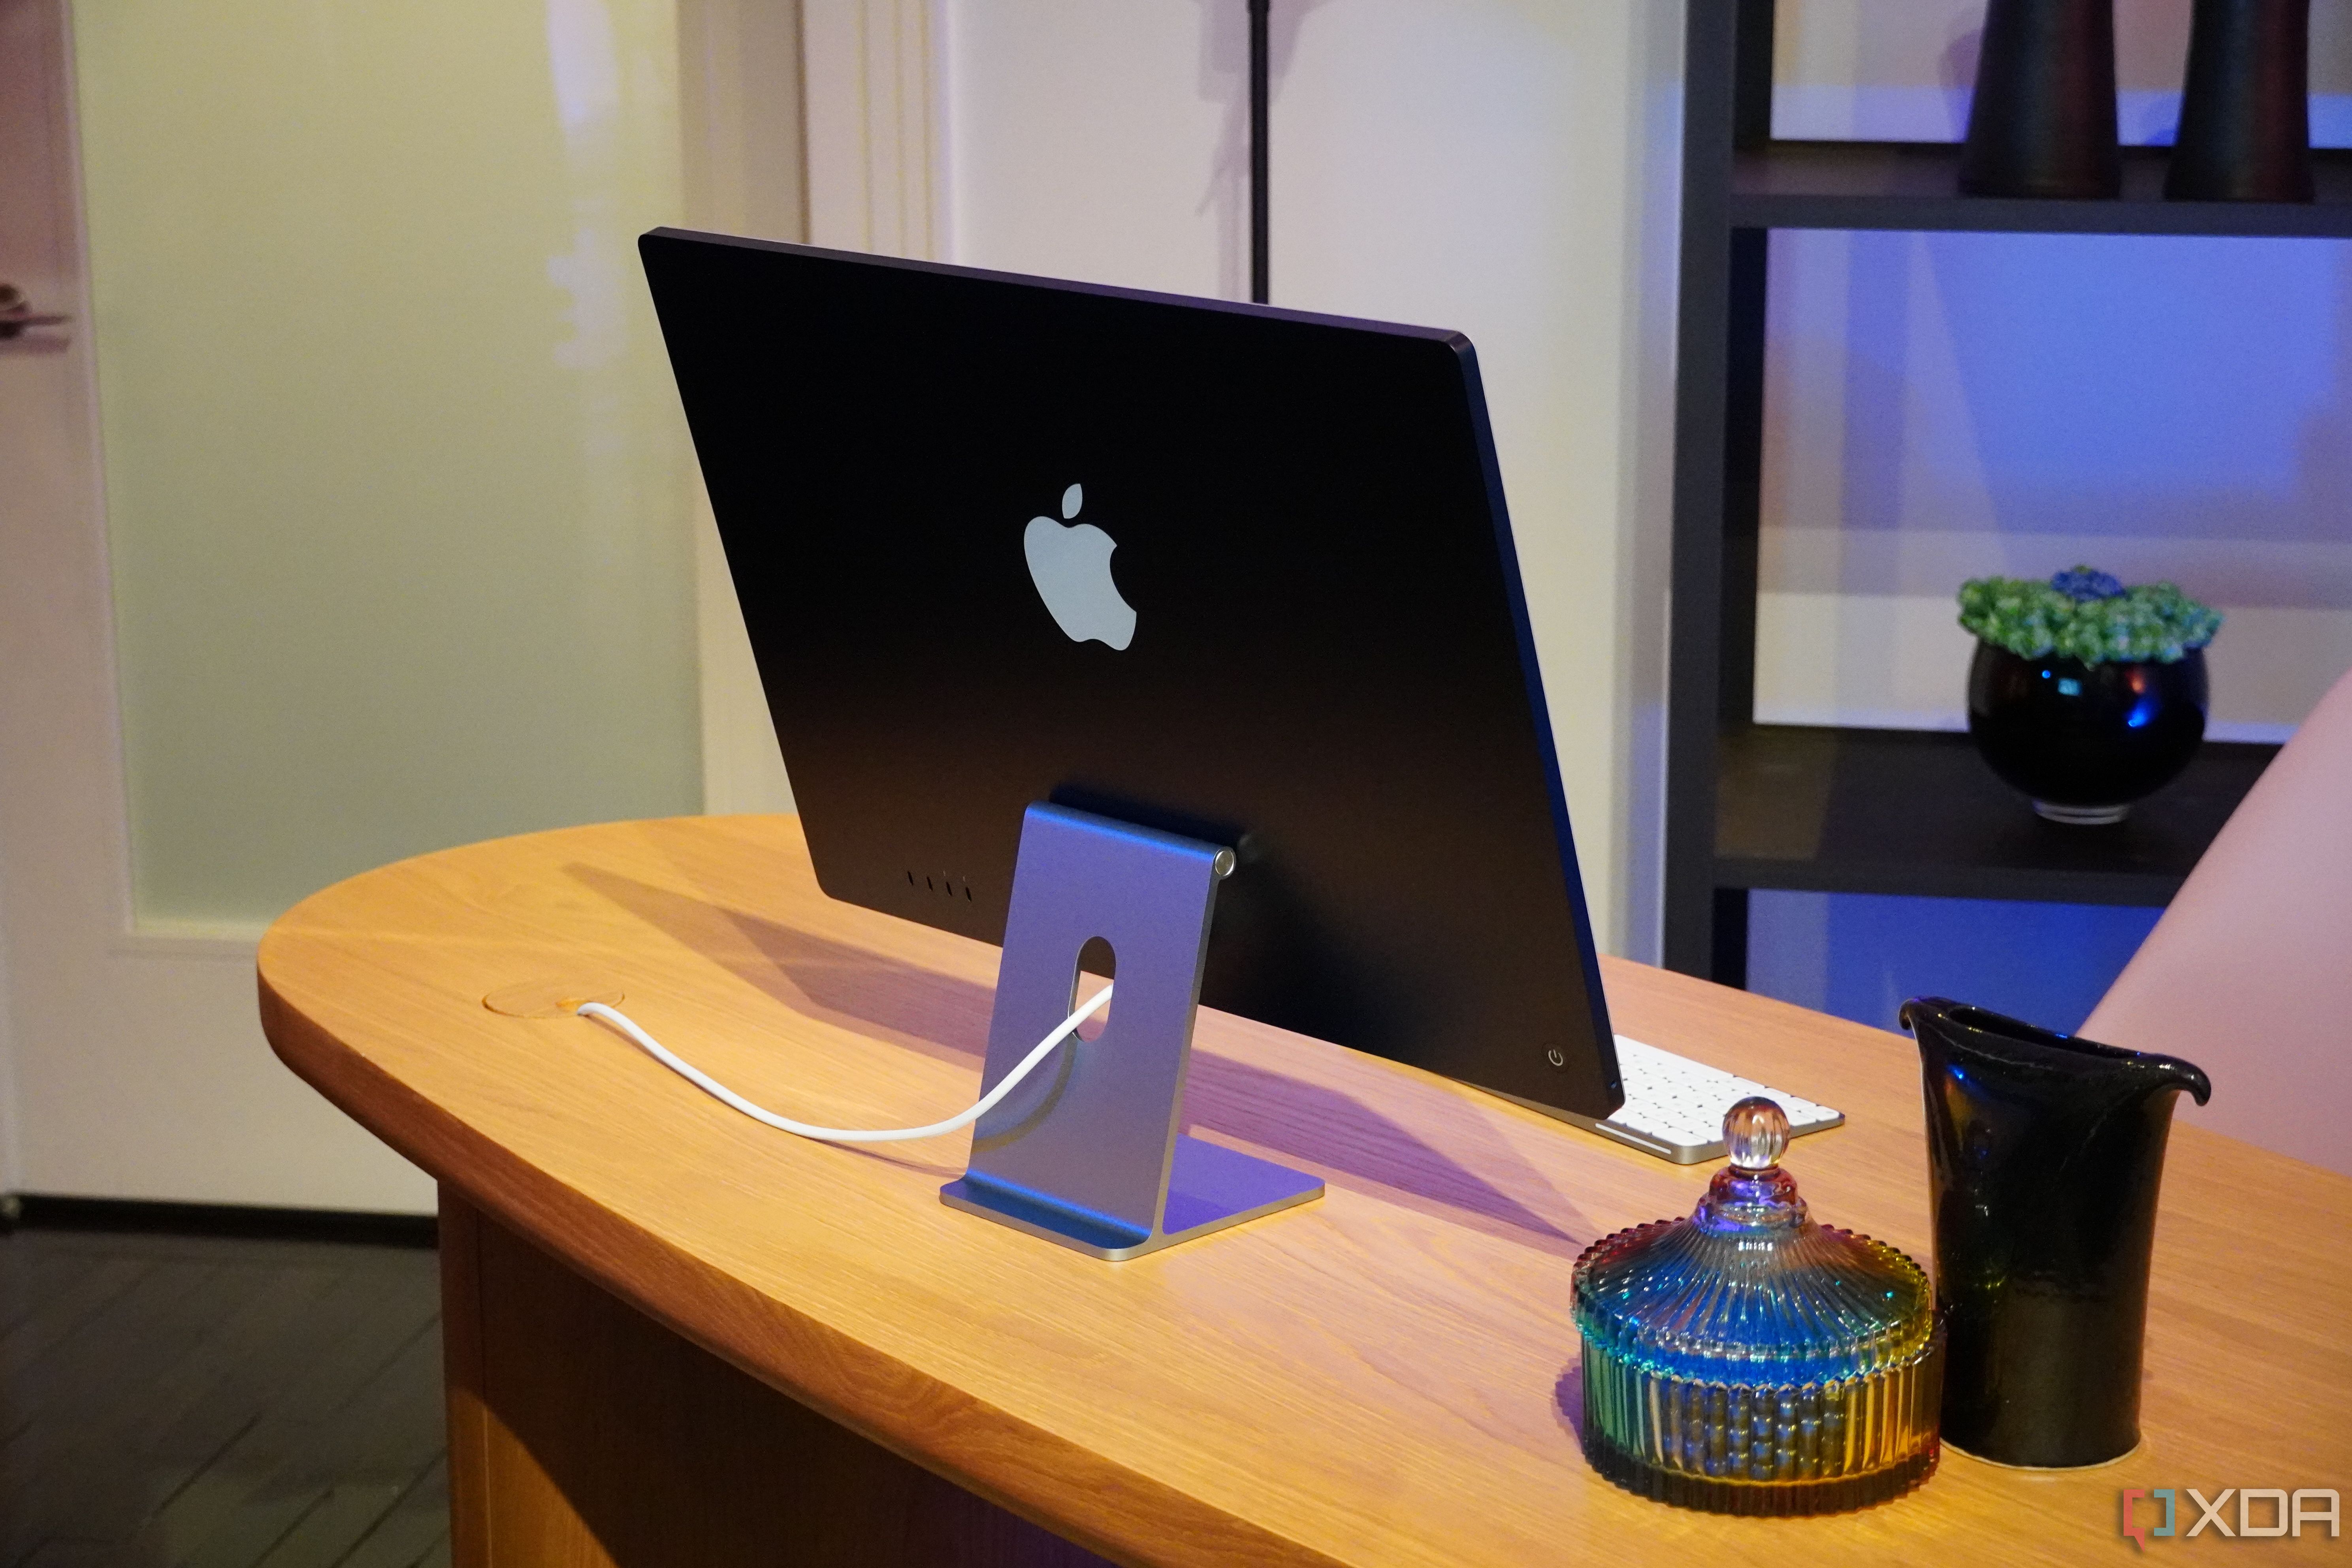 A desk setup featuring an M3 iMac.